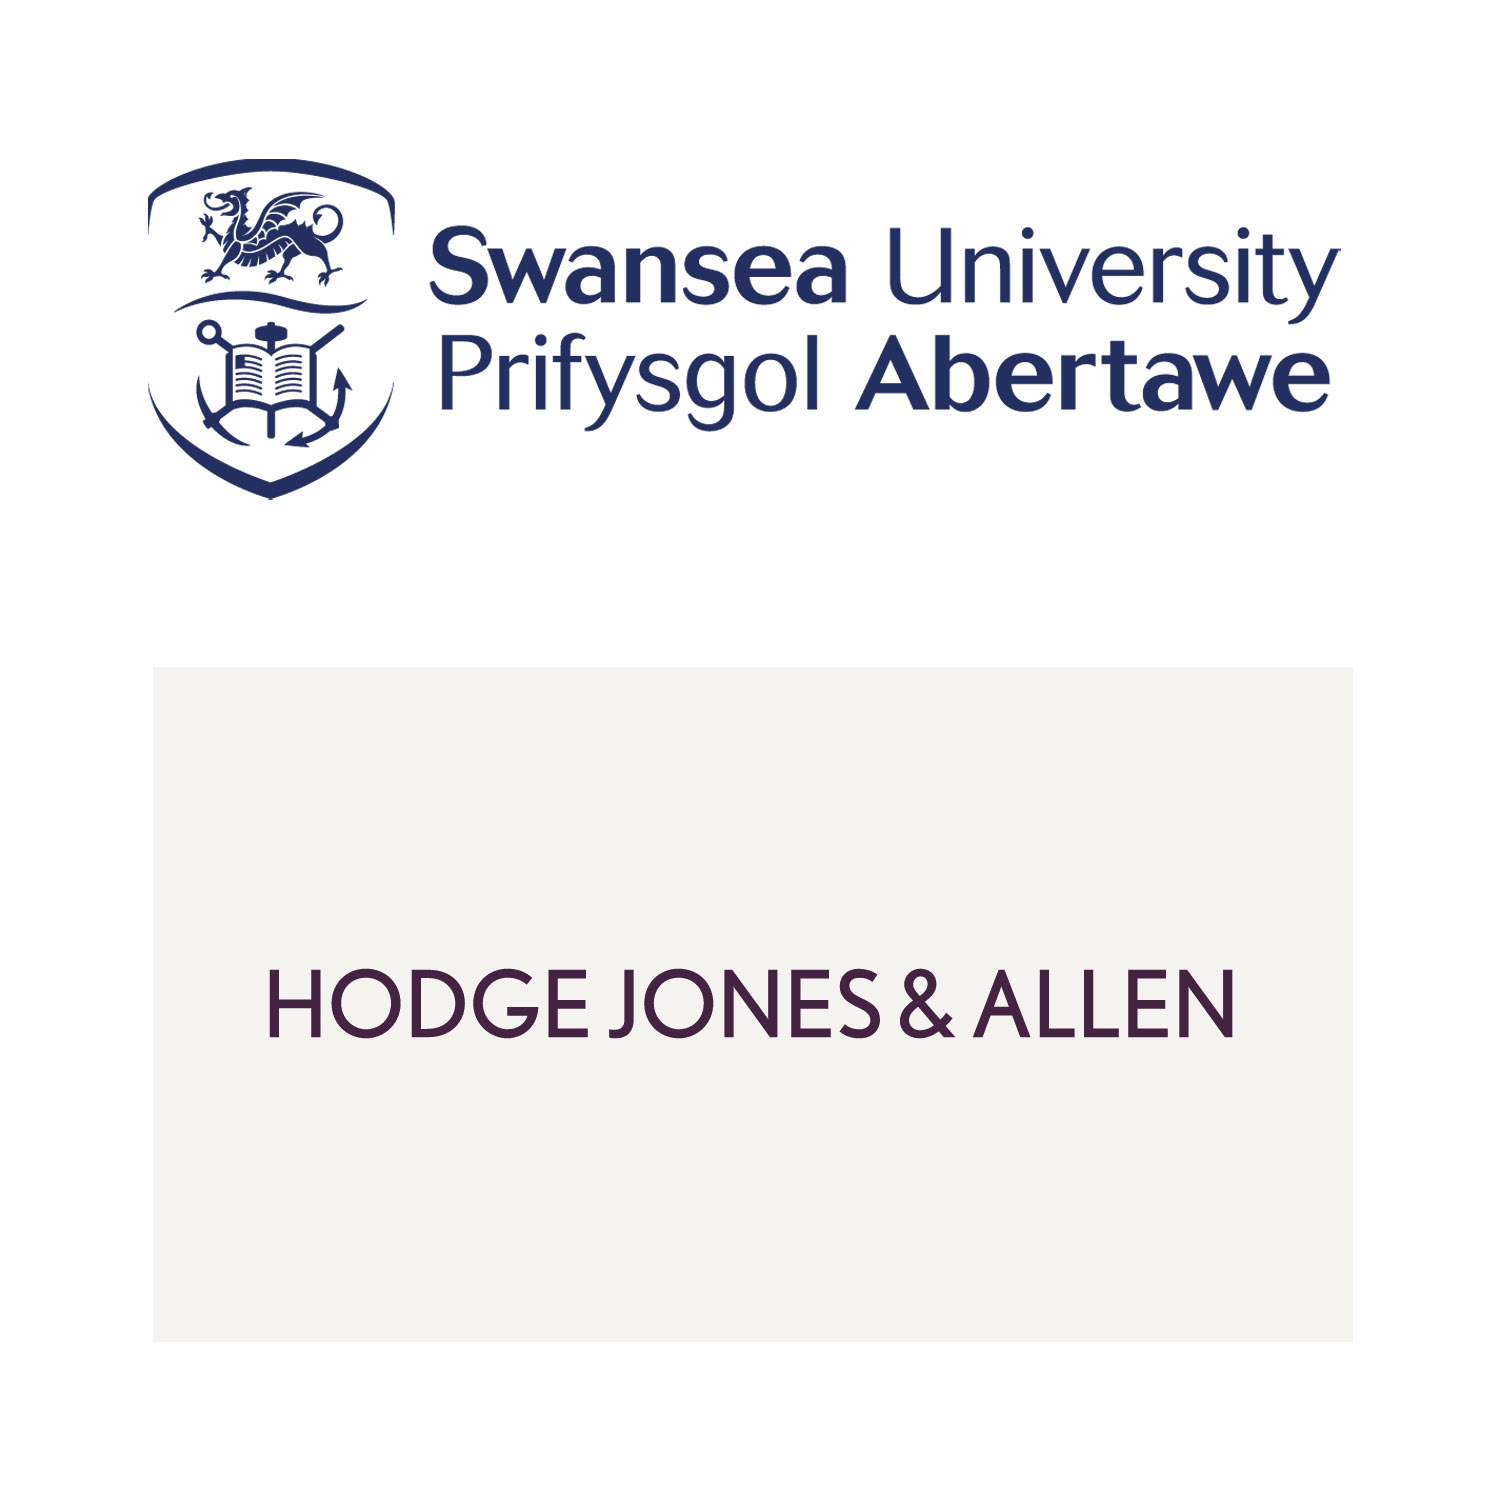 Swansea University and Hodge, Jones and Allen logos